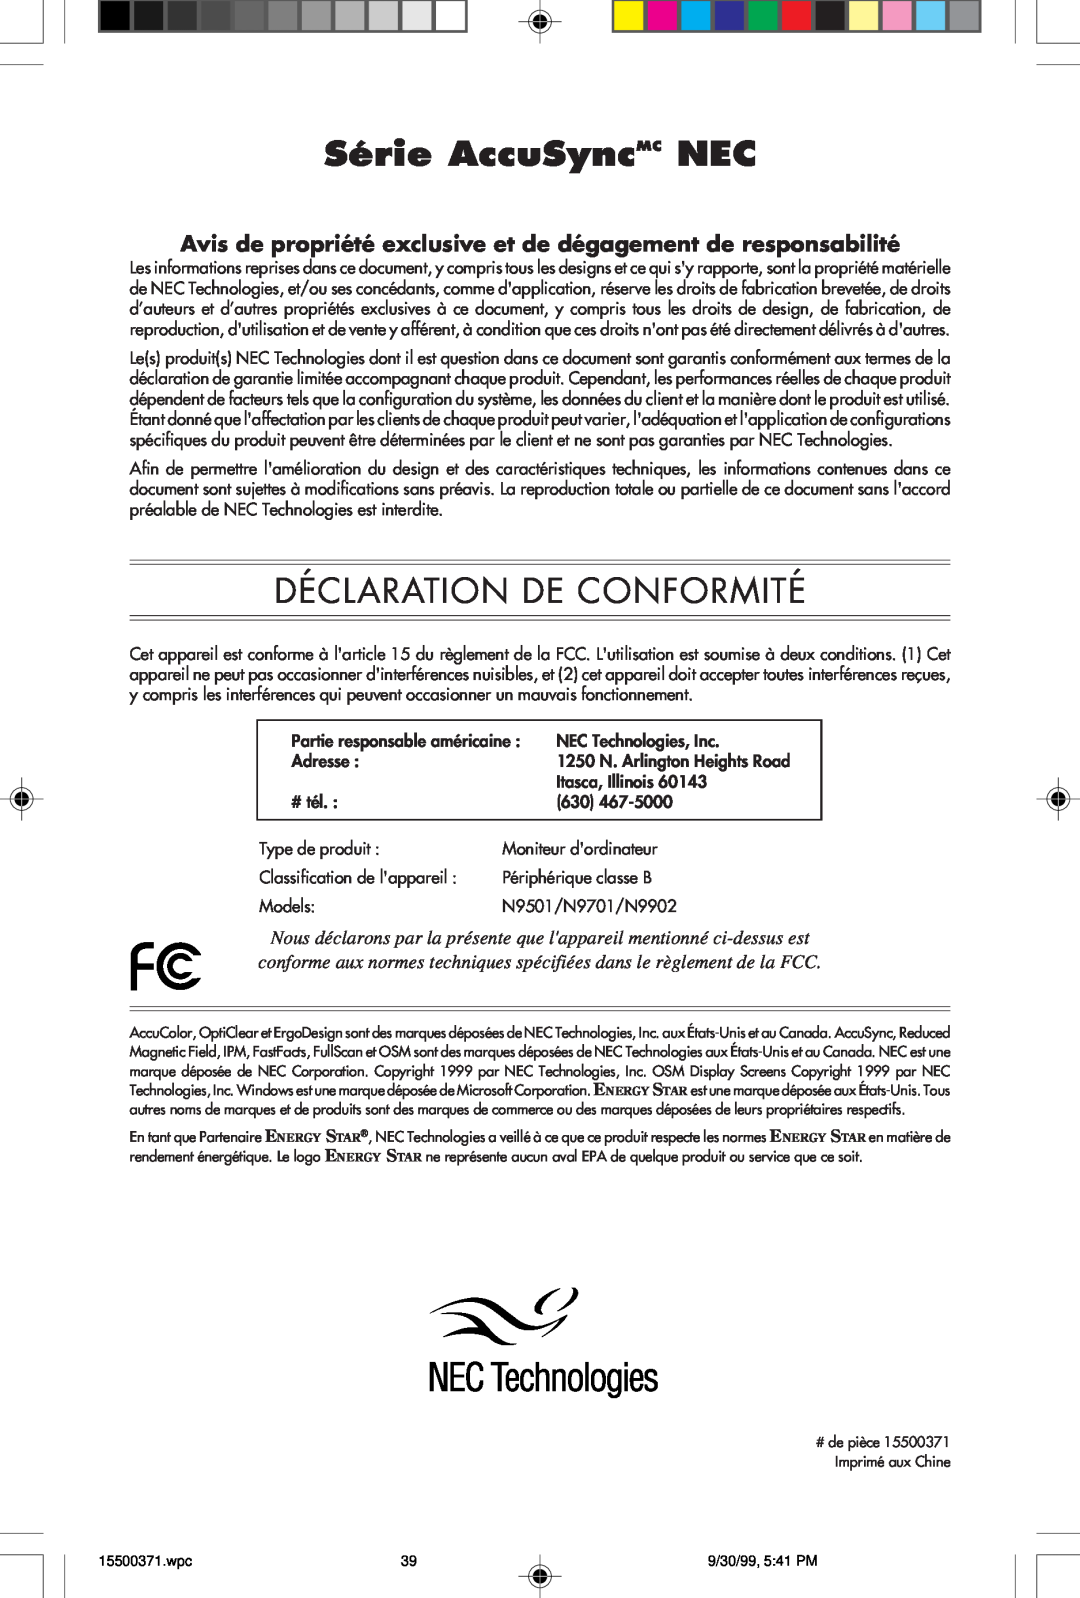 NEC N9701 Série AccuSyncMC NEC, Déclaration De Conformité, Avis de propriété exclusive et de dégagement de responsabilité 